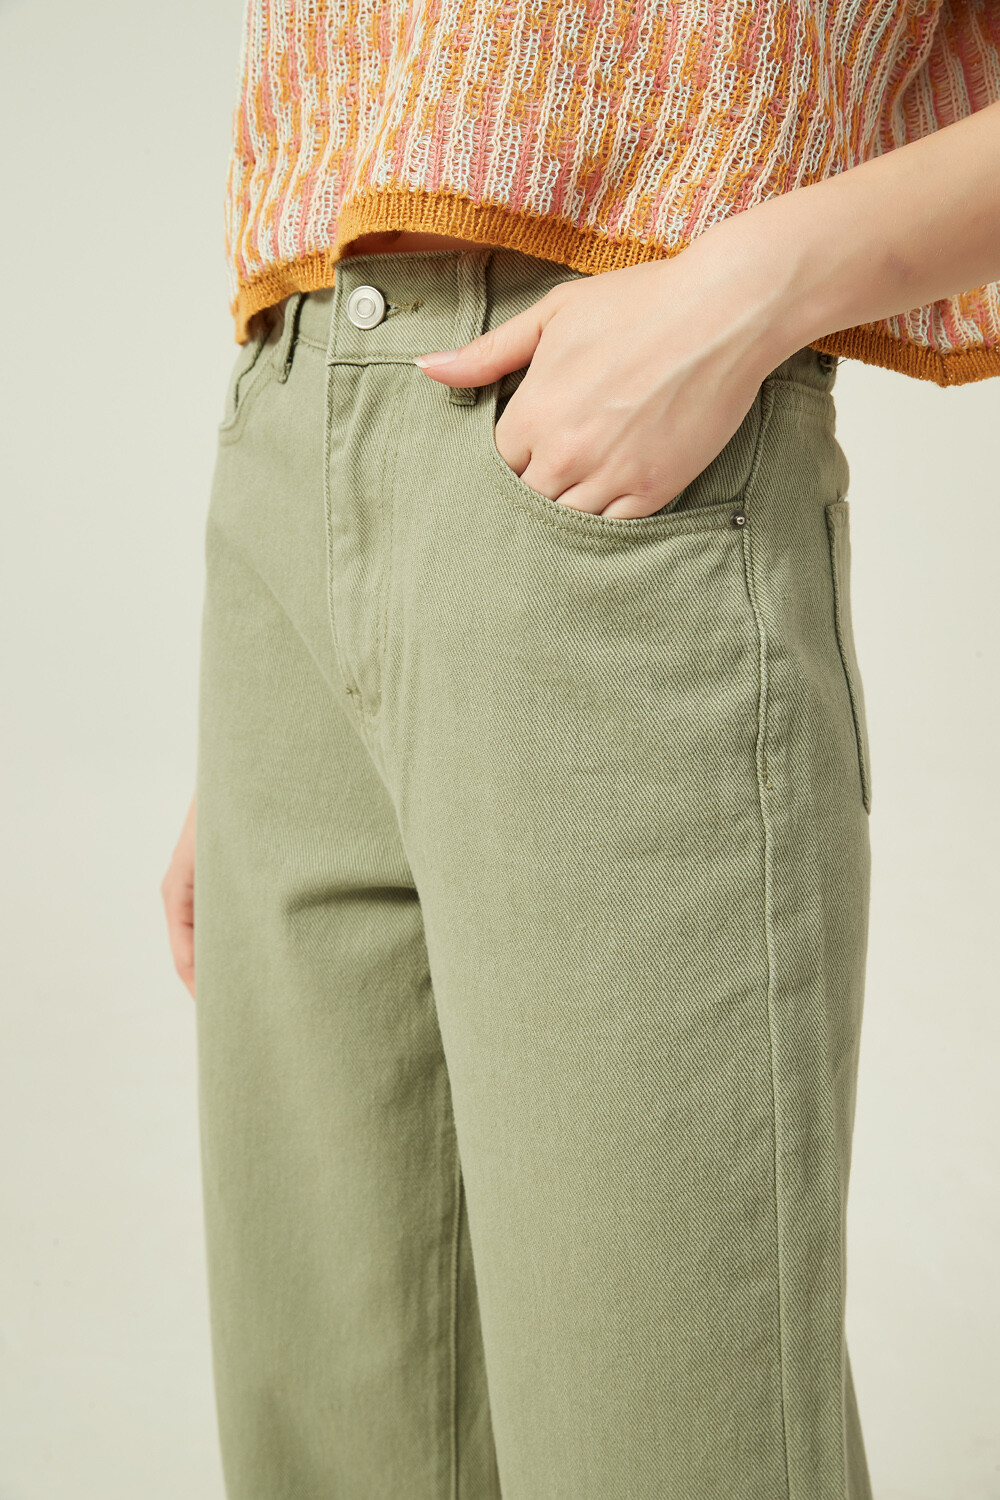 Pantalon Piticu Verde Claro